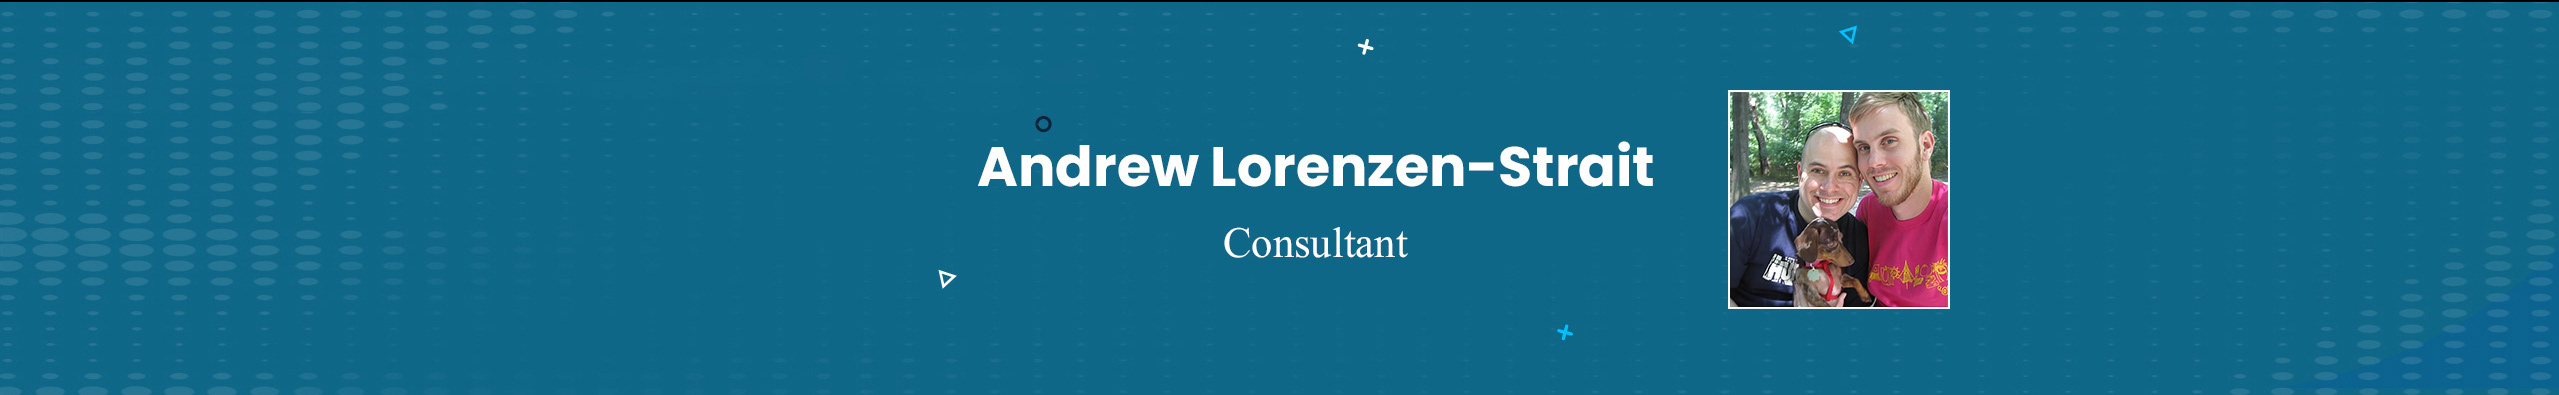 Andrew Lorenzen-Strait's profile banner